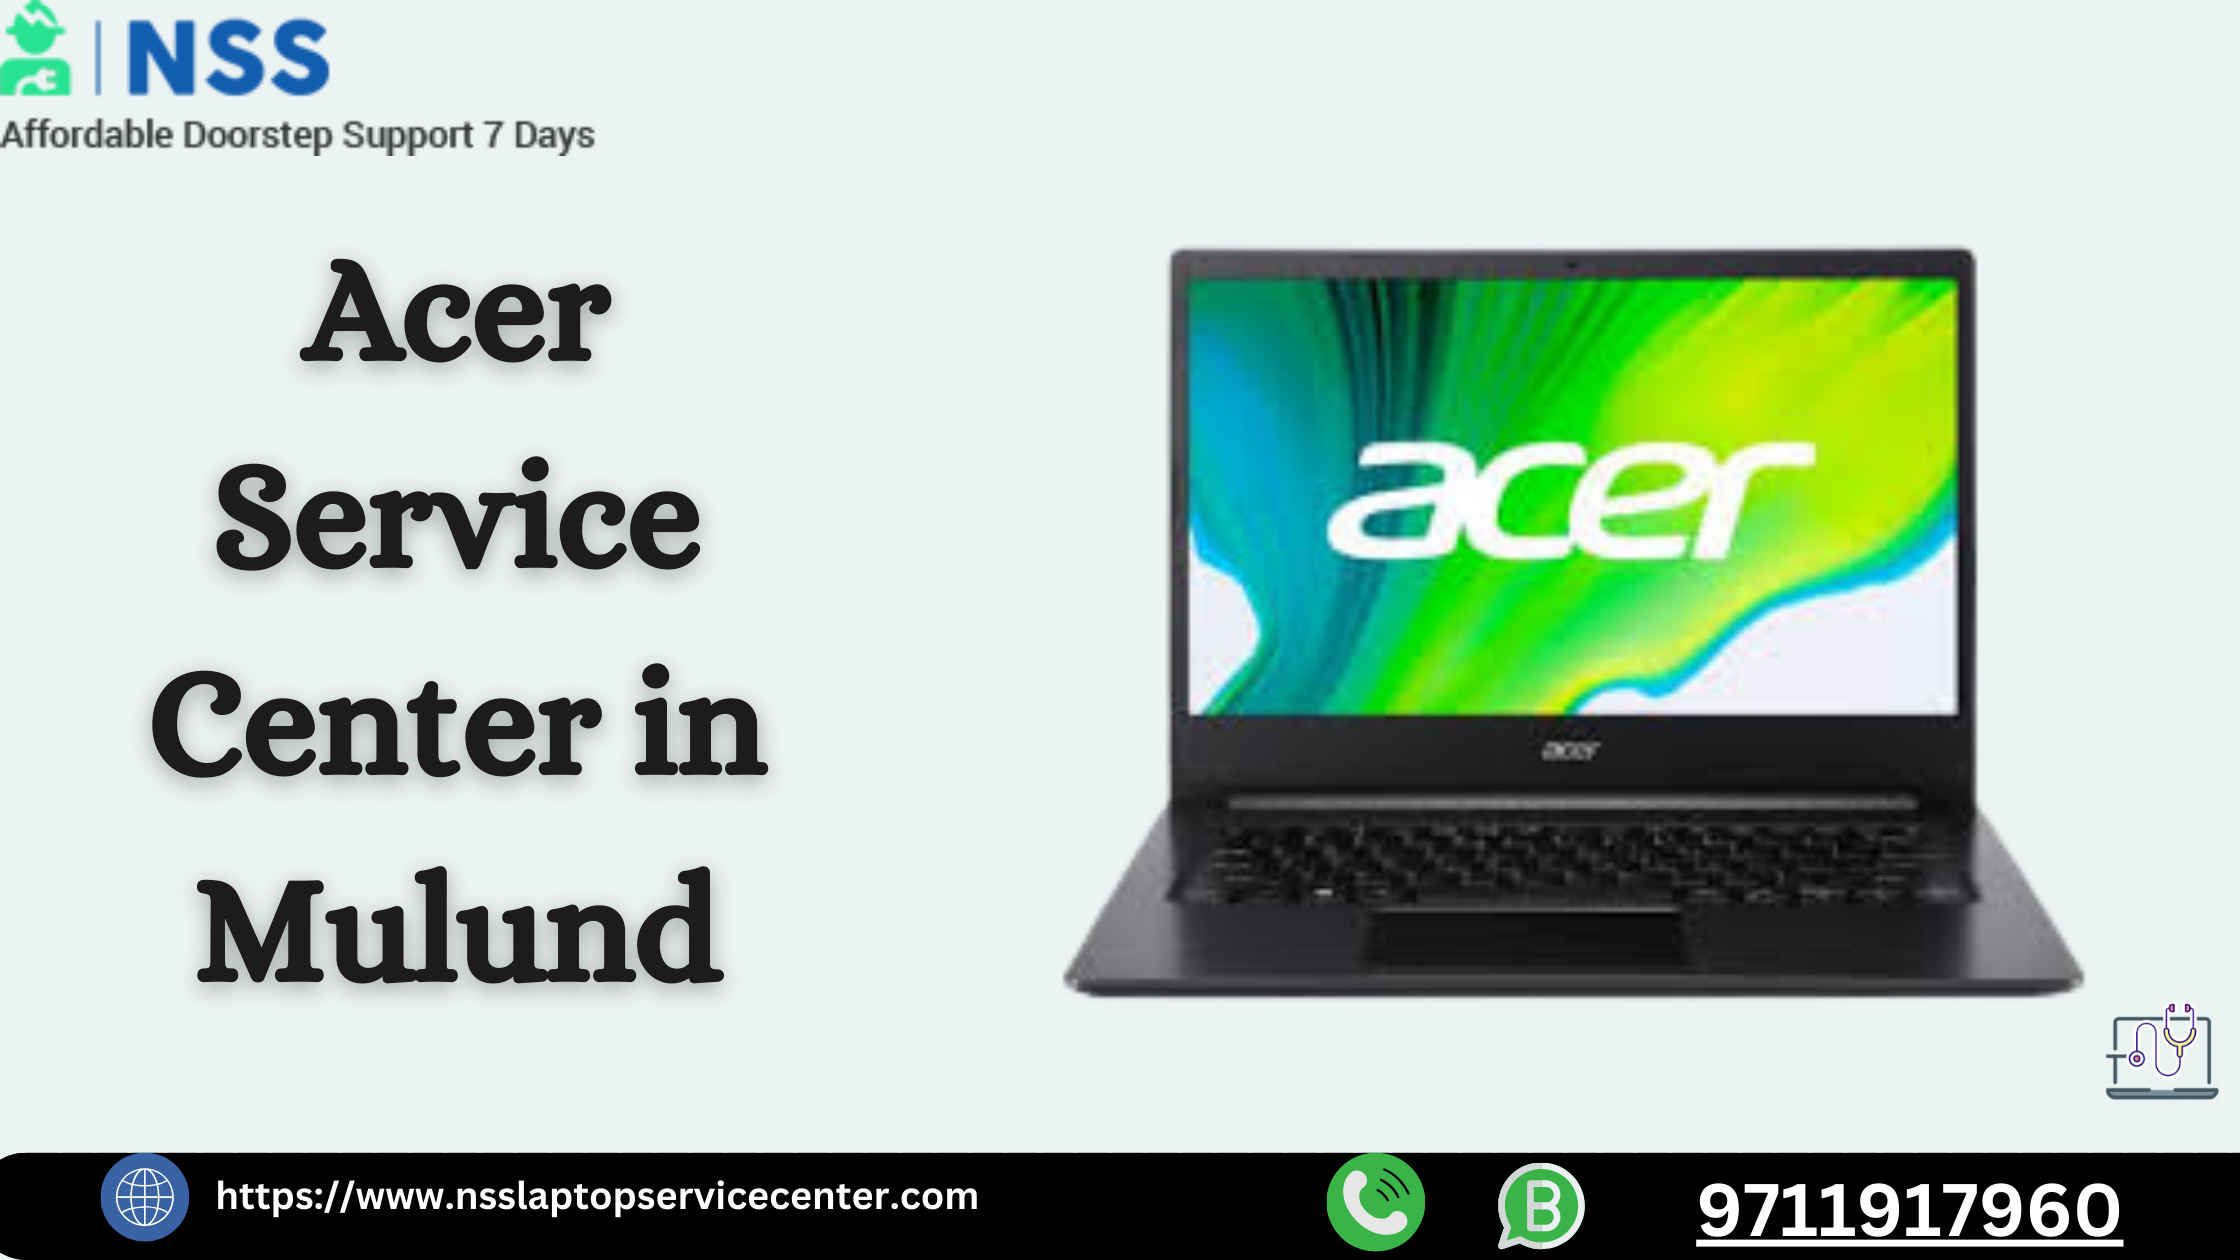 Acer Service Center in Mulund Near Mumbai